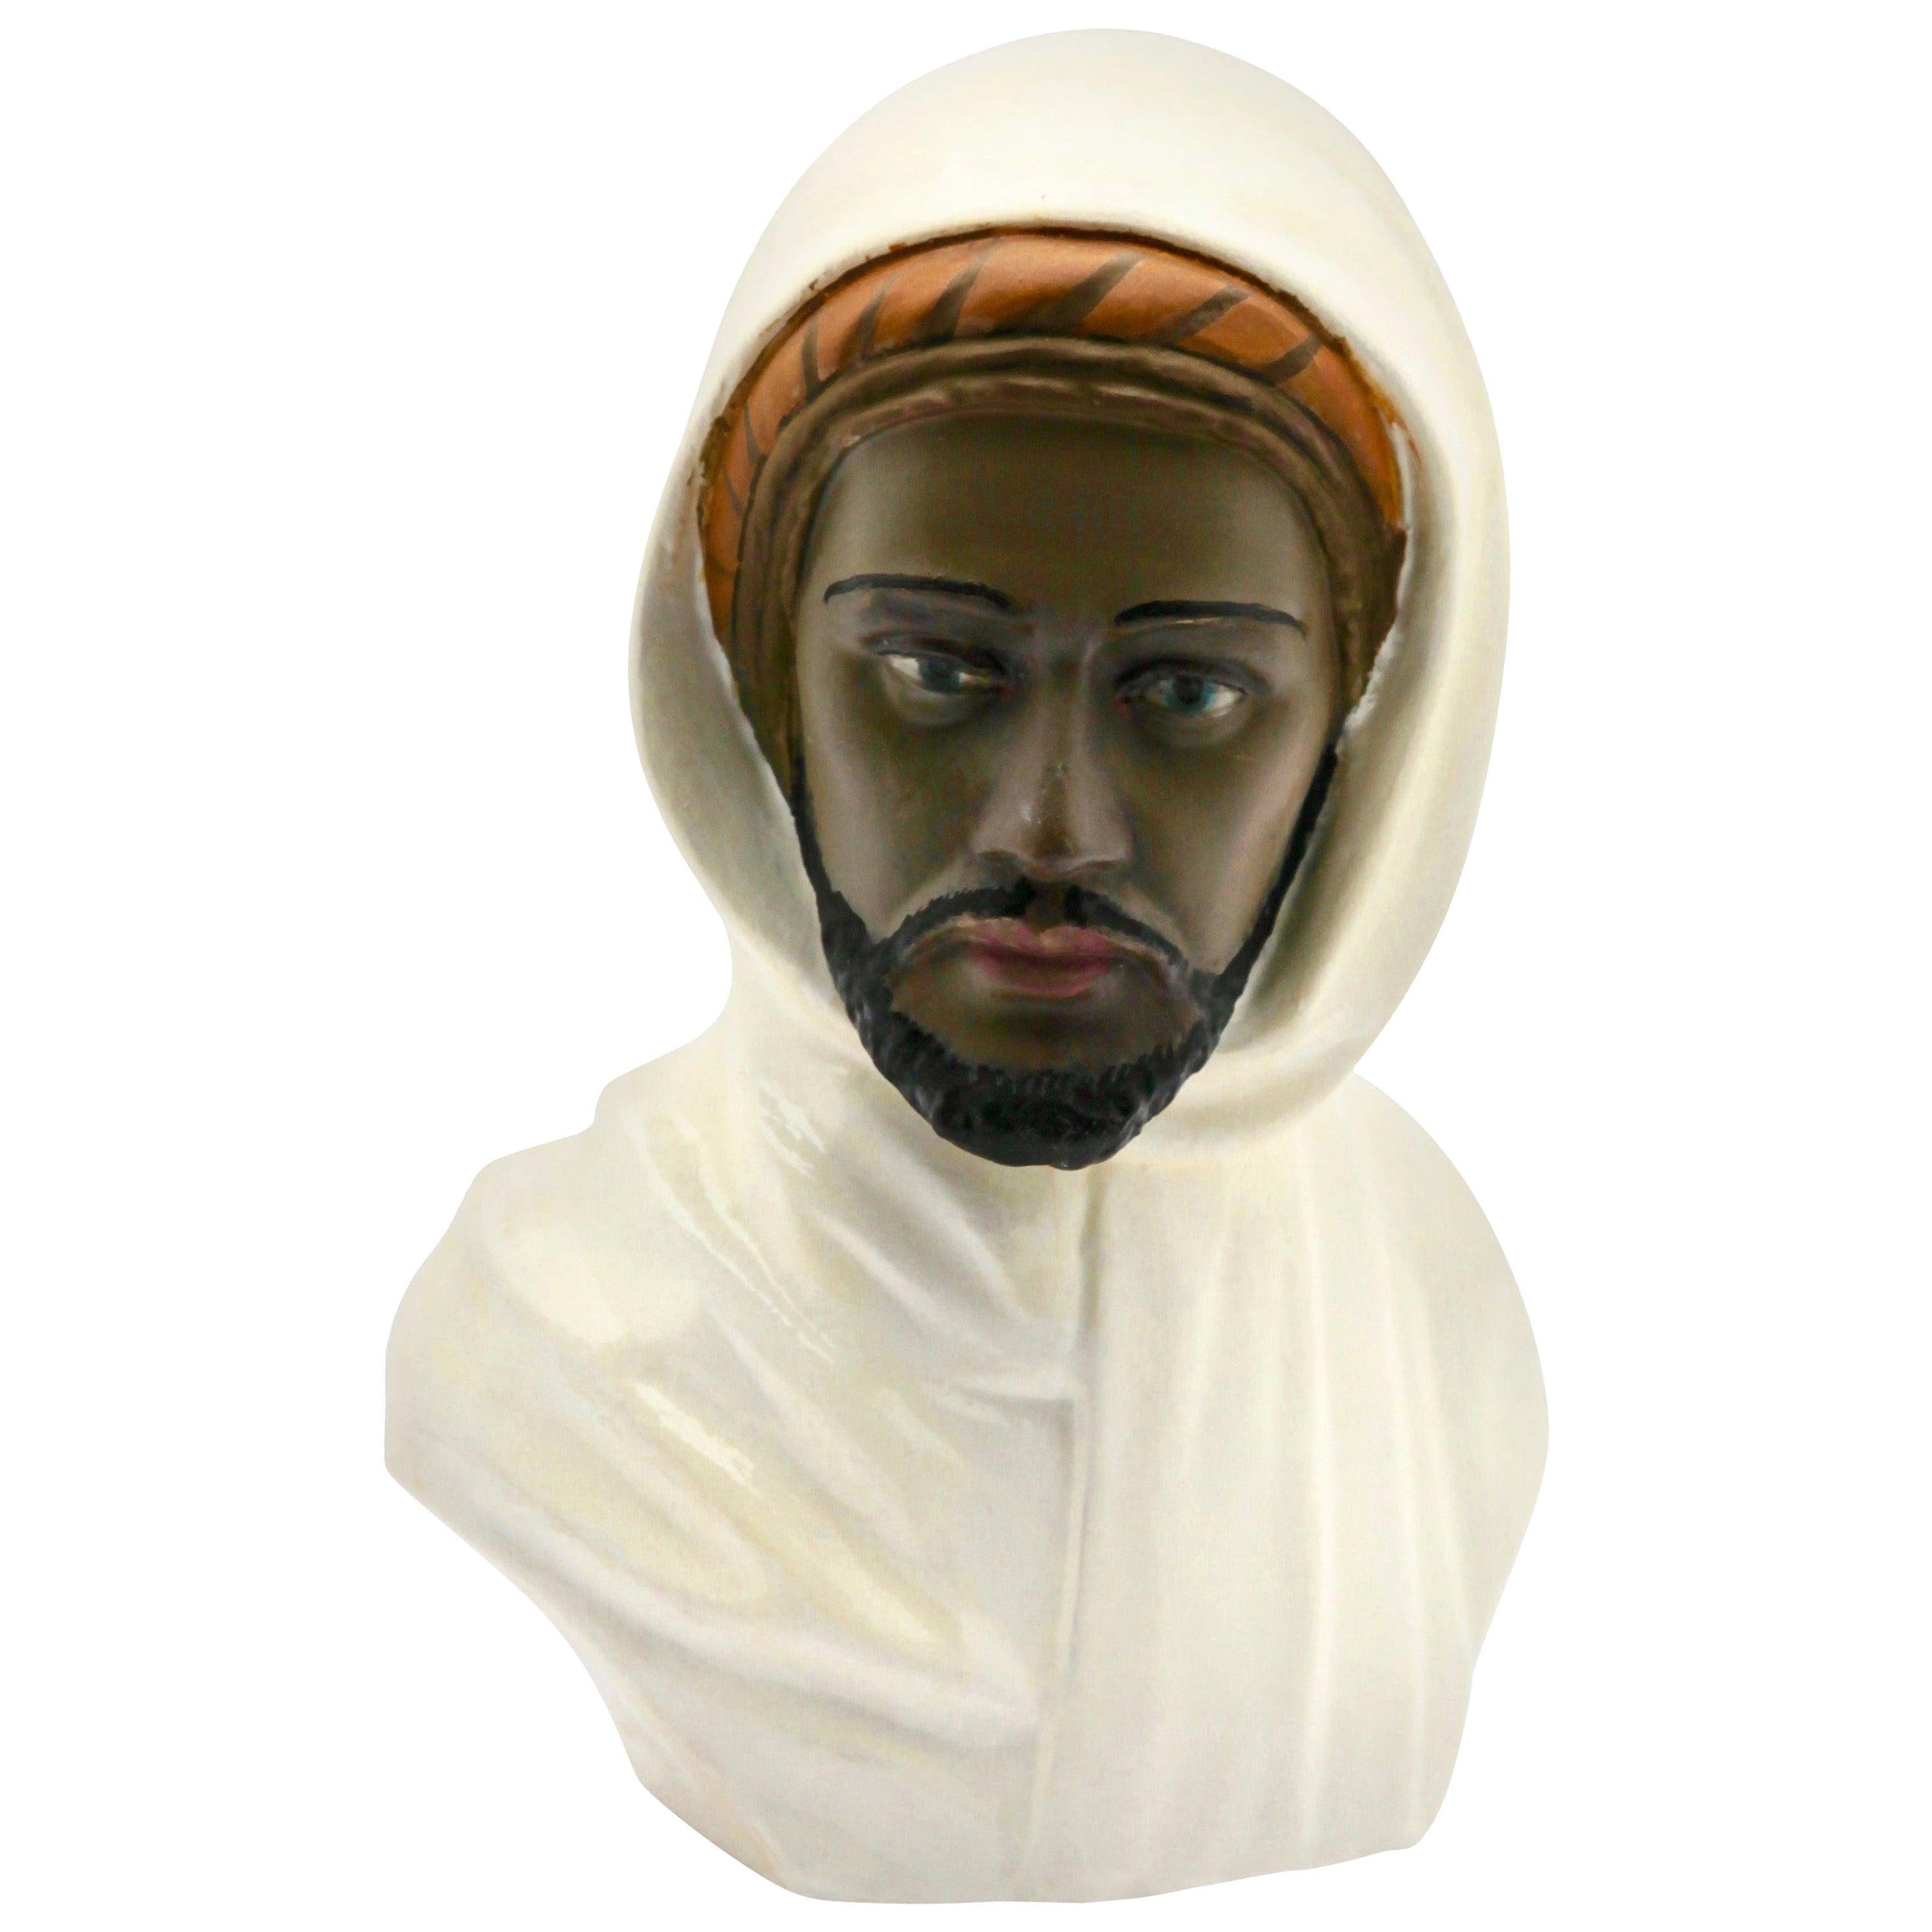 Buste en céramique polychrome représentant une tête arabe, signé Guiseppe Carli